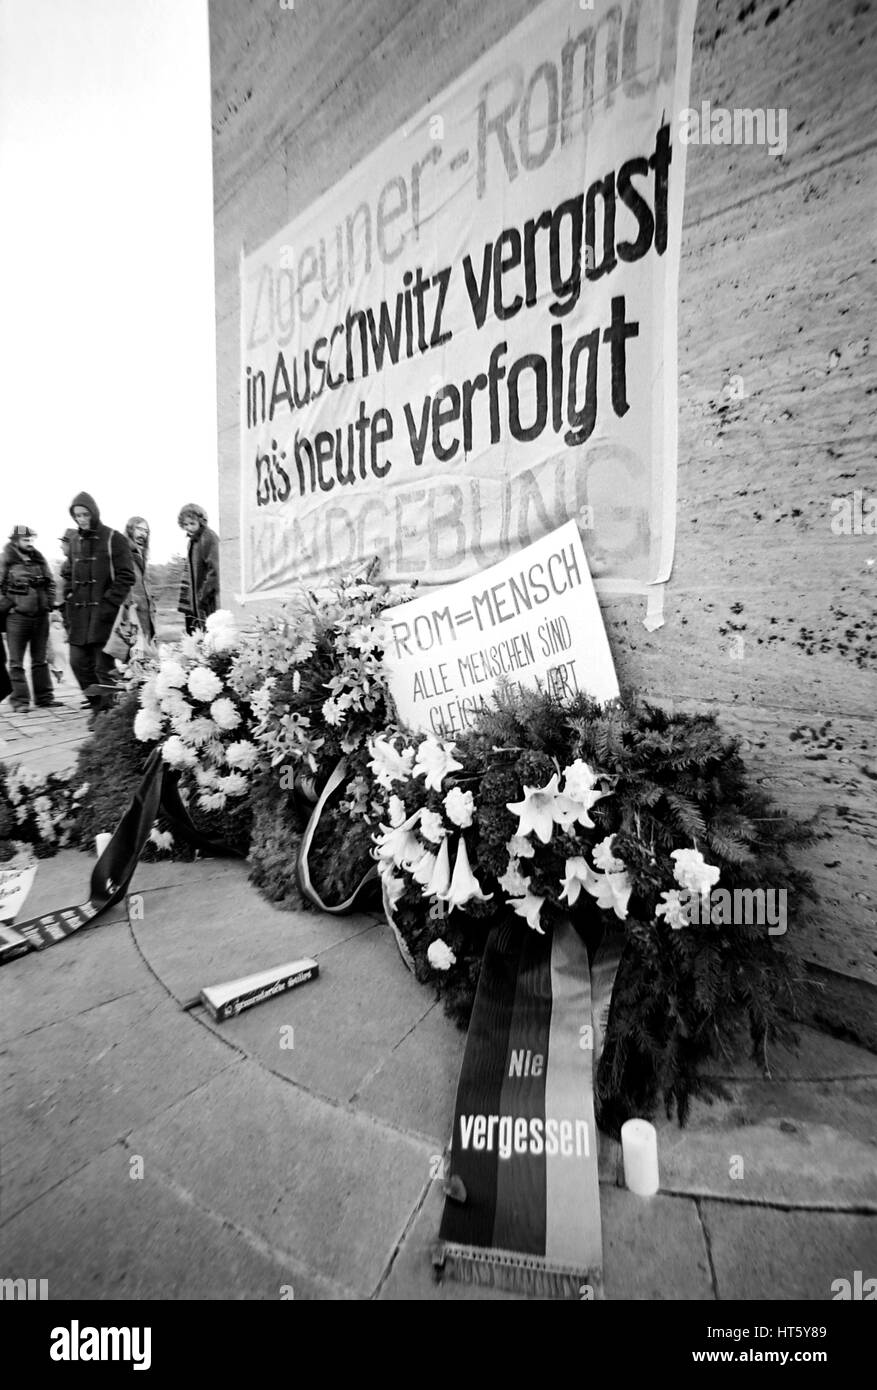 Bergen-Belsen, Germania, 27.10.1979 - evento commemorativo per la persecuzione dei Sinti e Roma nel Terzo Reich nel memoriale della concentrazione Bergen-Belsen camp (immagine digitale da una b/w-film-negativo) Foto Stock